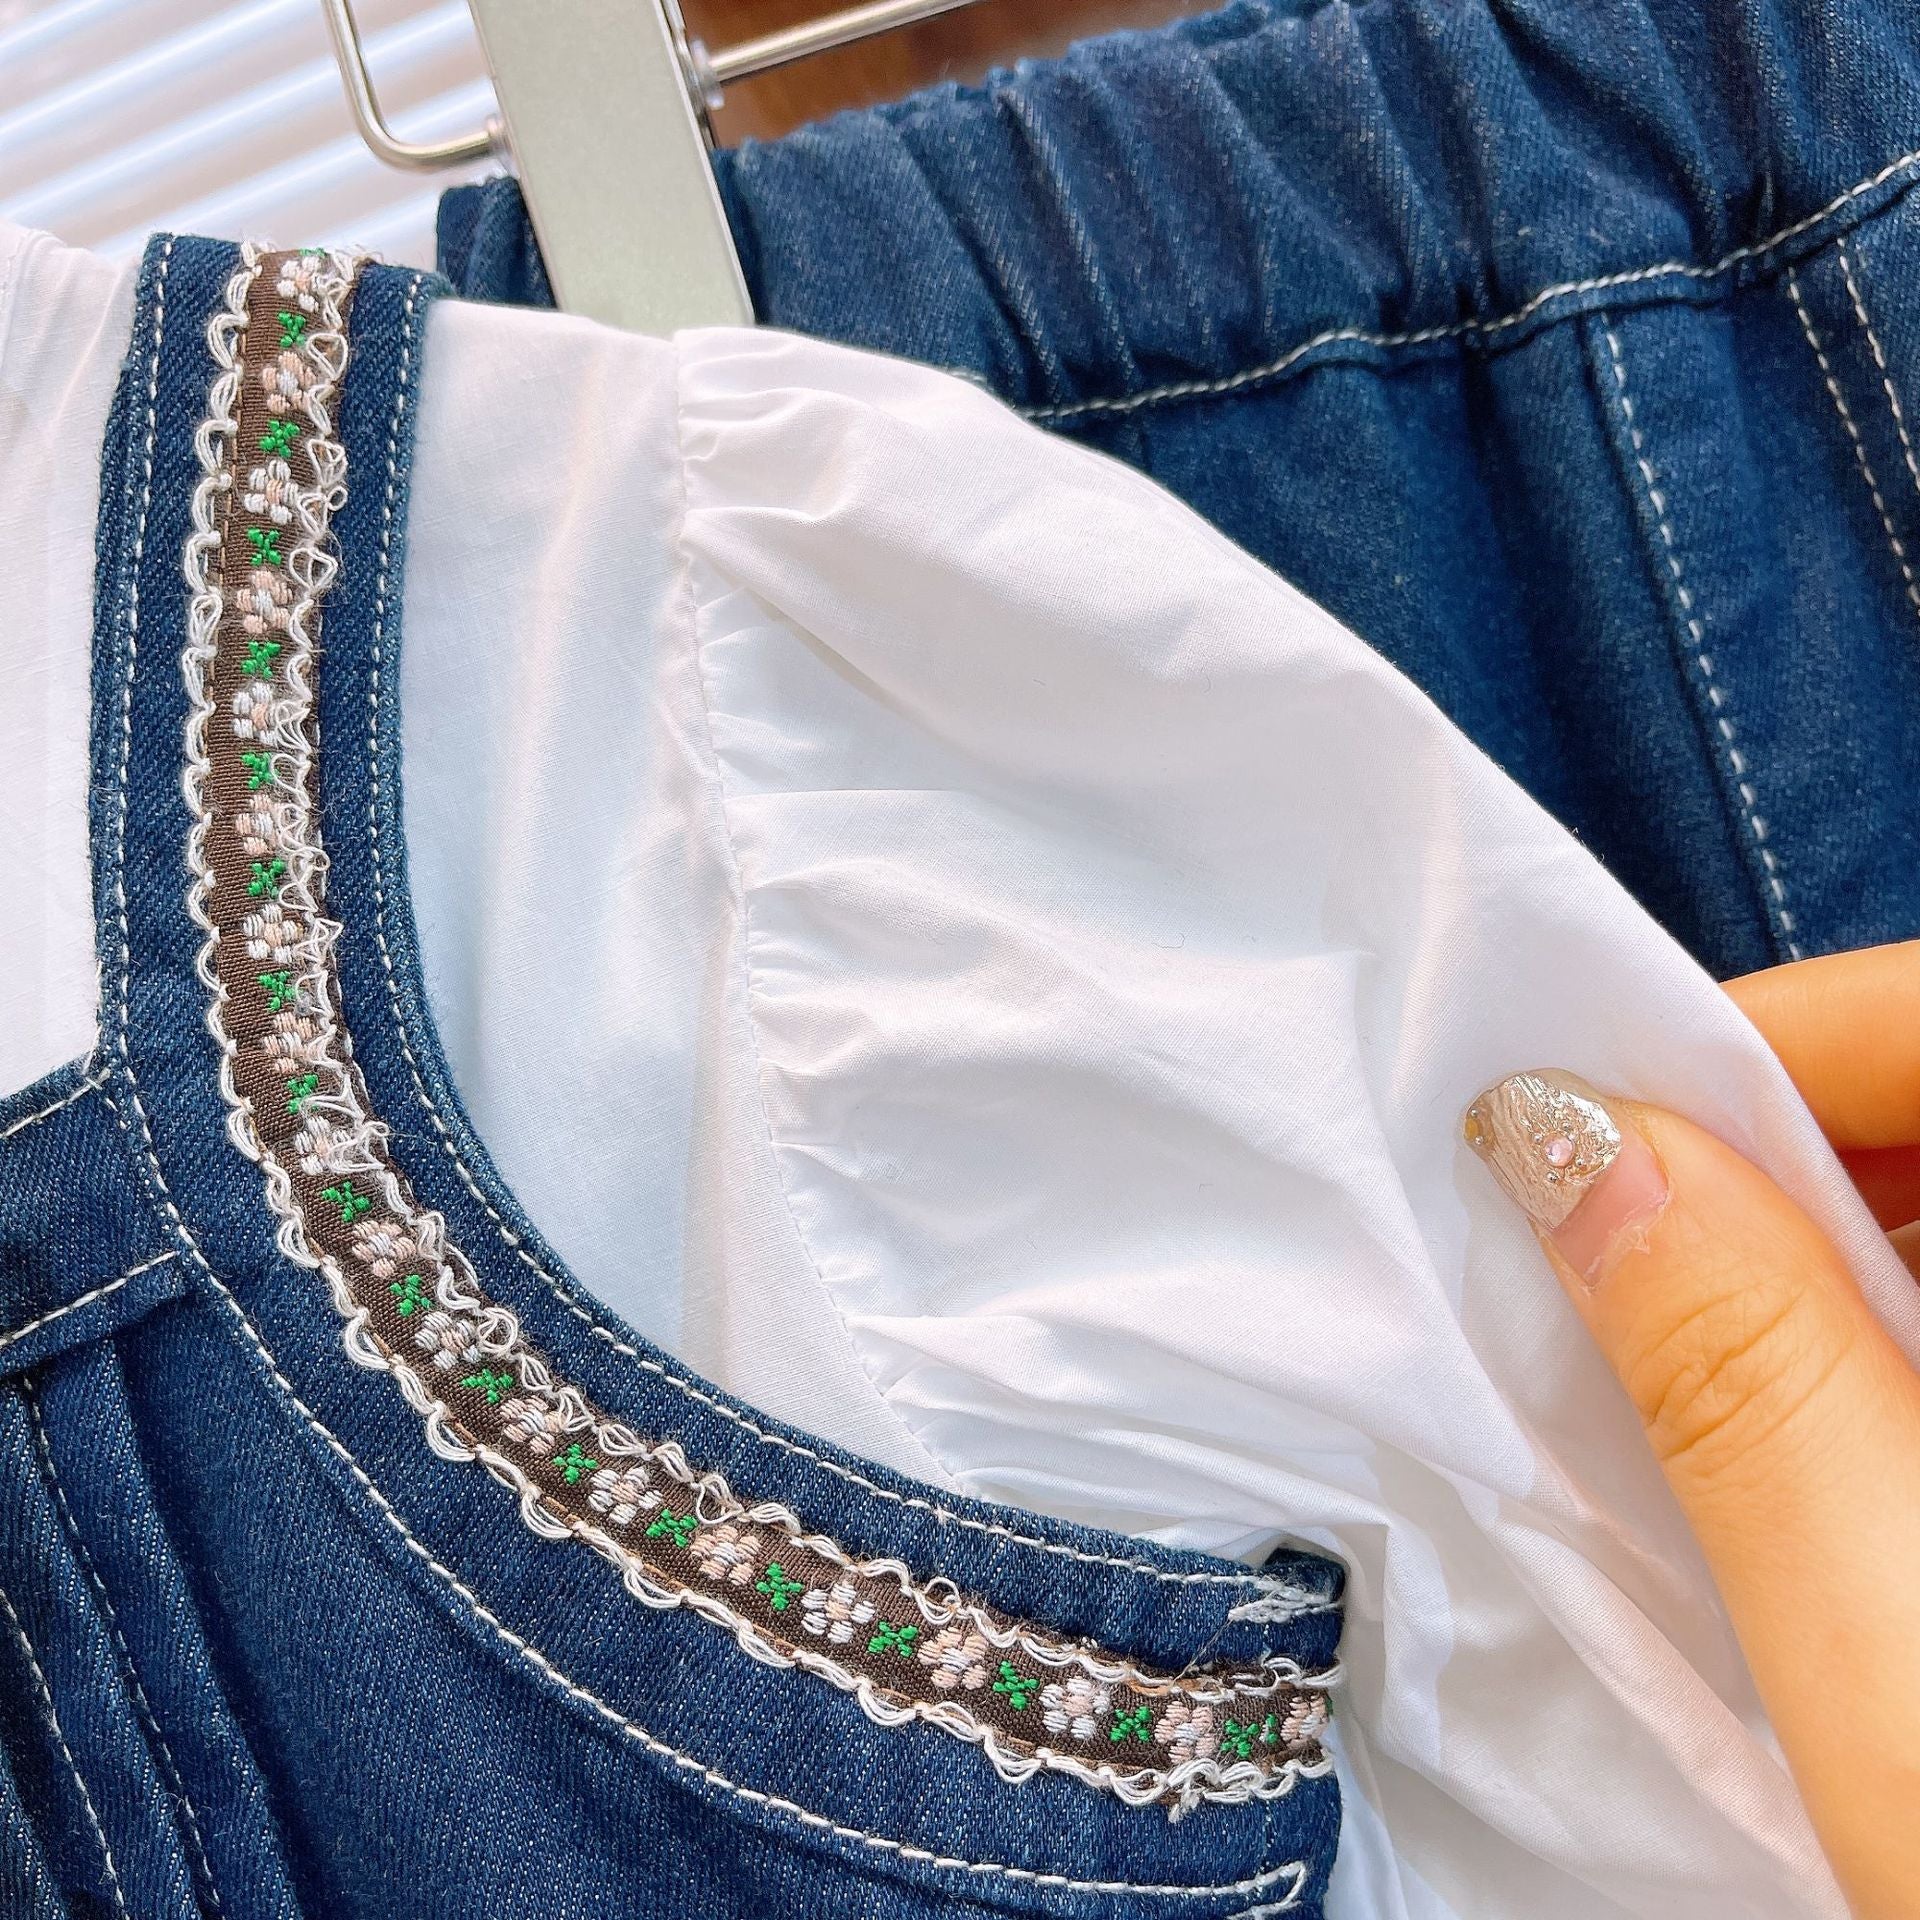 [363748] - Baju Setelan Blouse Rompi Lengan Panjang Celana Jeans Panjang Fashion Anak Perempuan - Motif Flower Strap